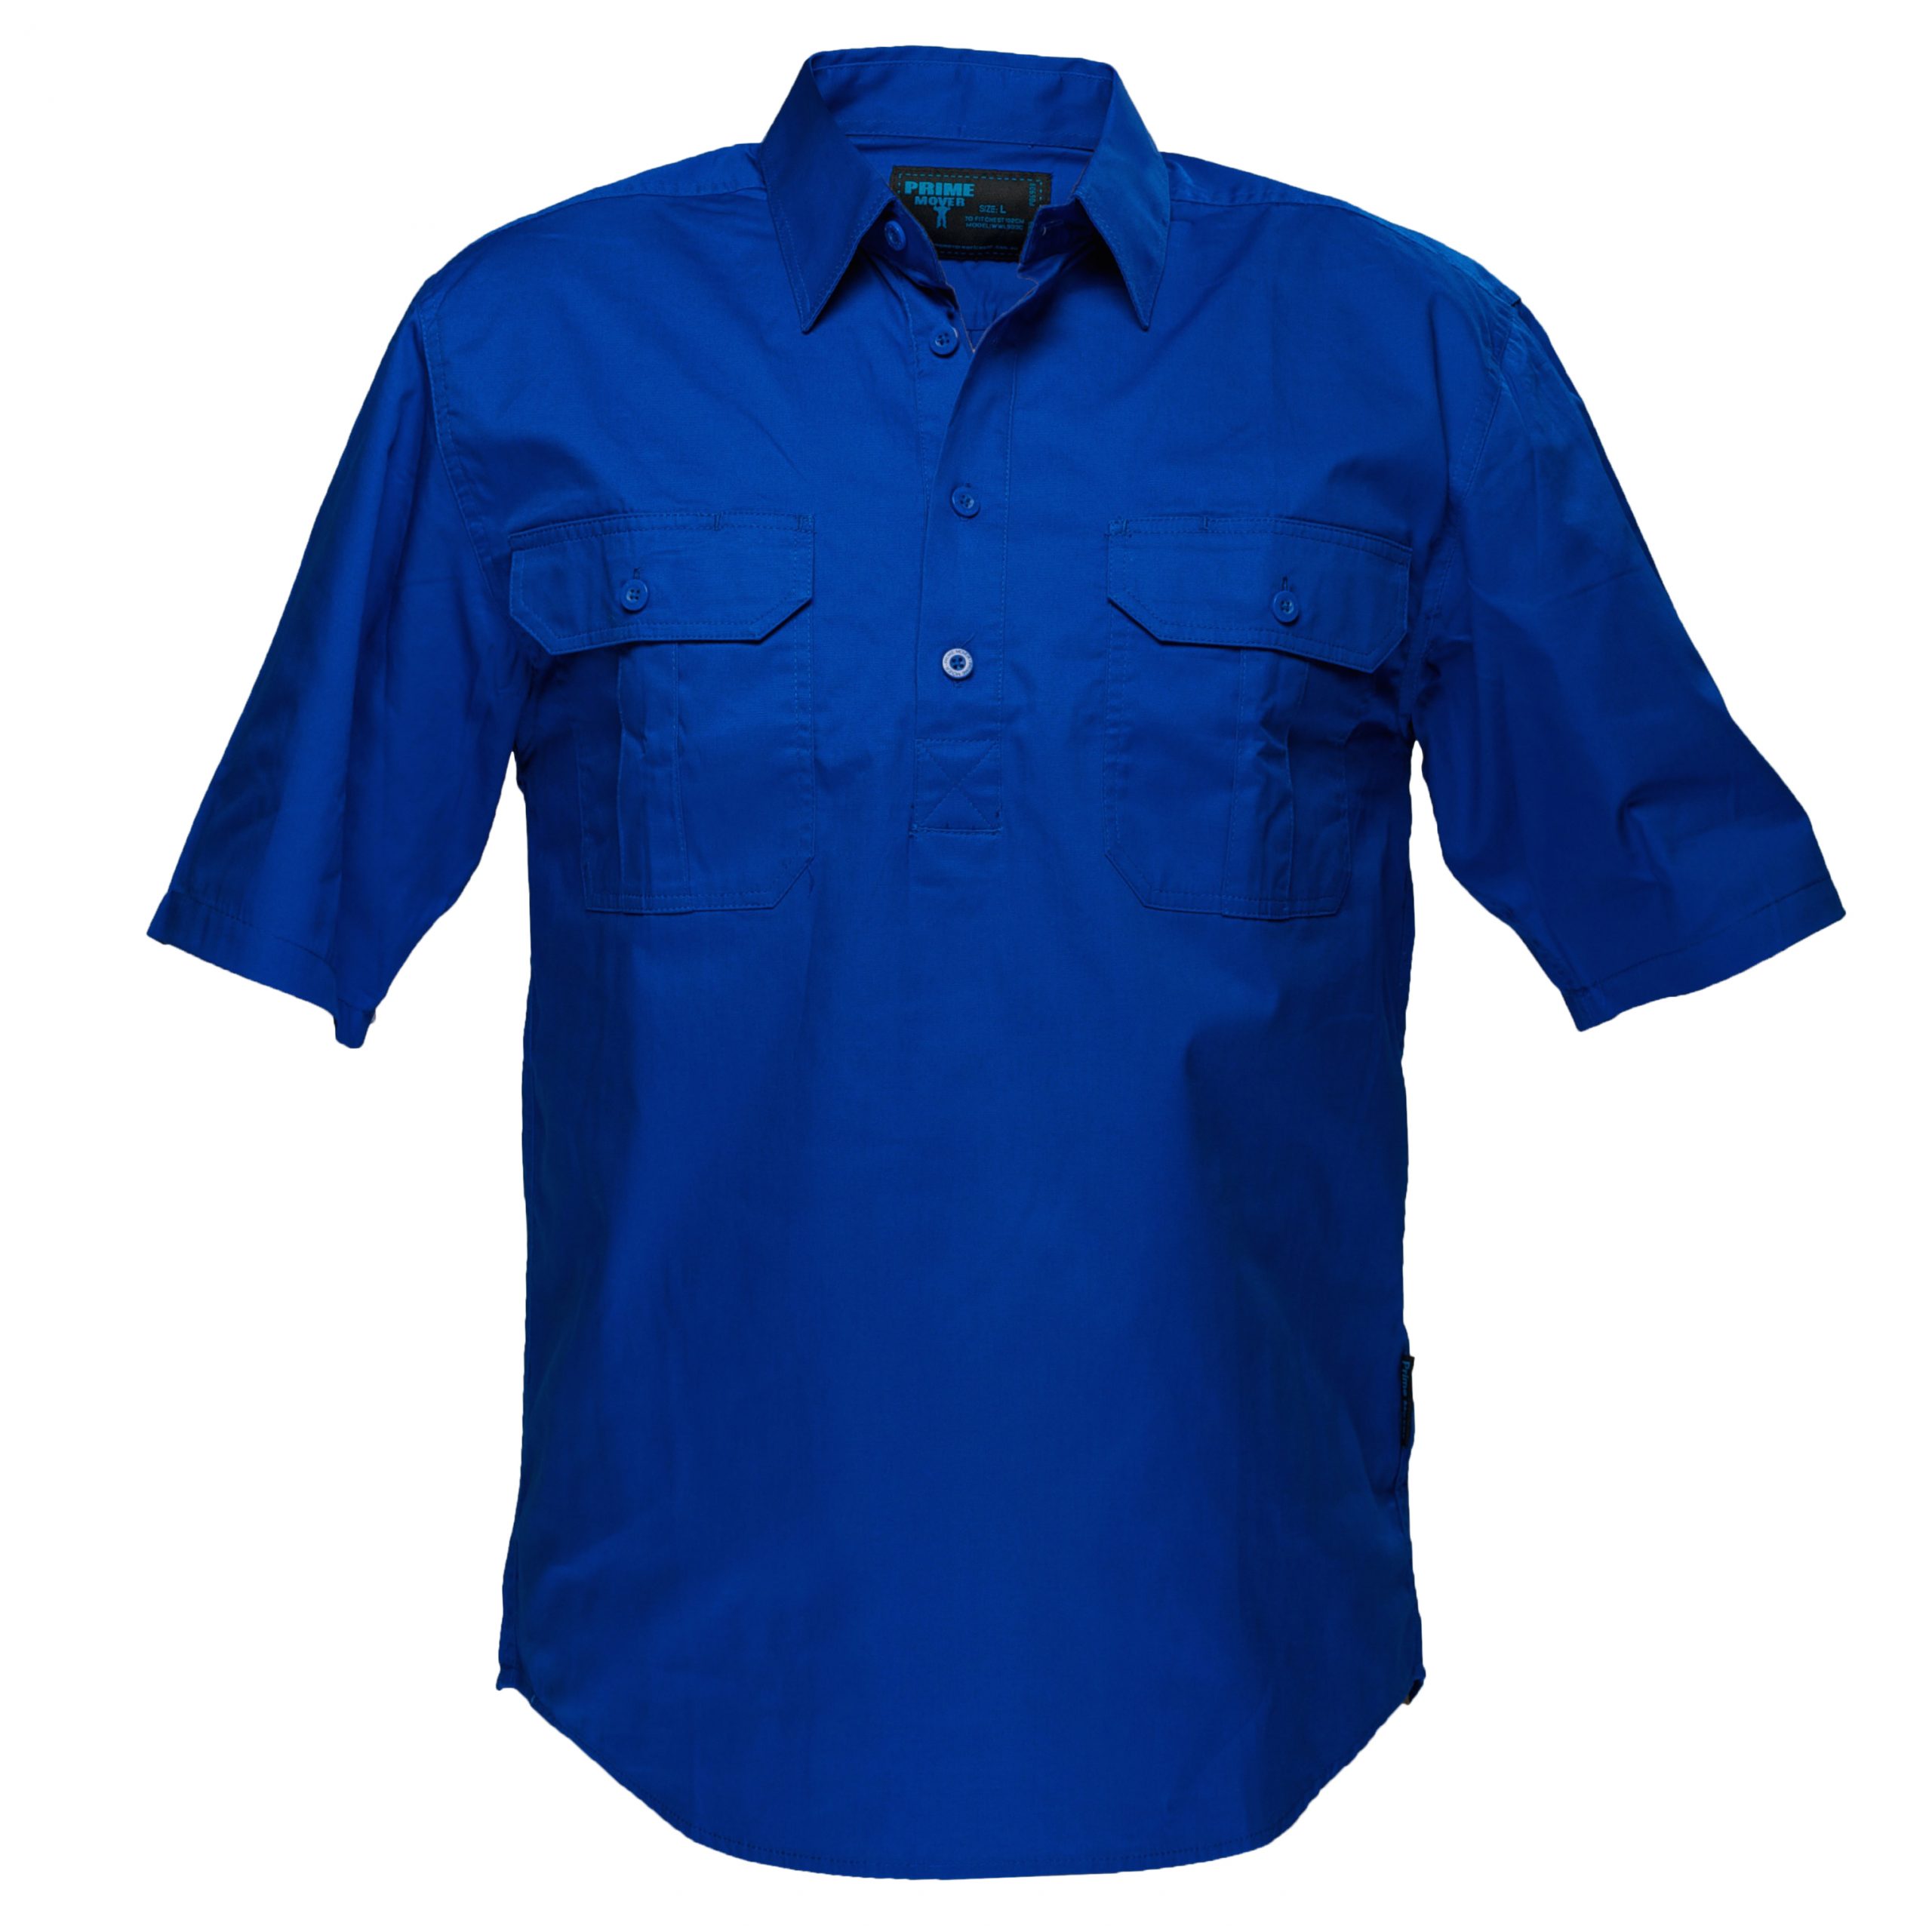 MC905 - Adelaide Shirt, Cotton Short Sleeve, Light Weight Cobalt